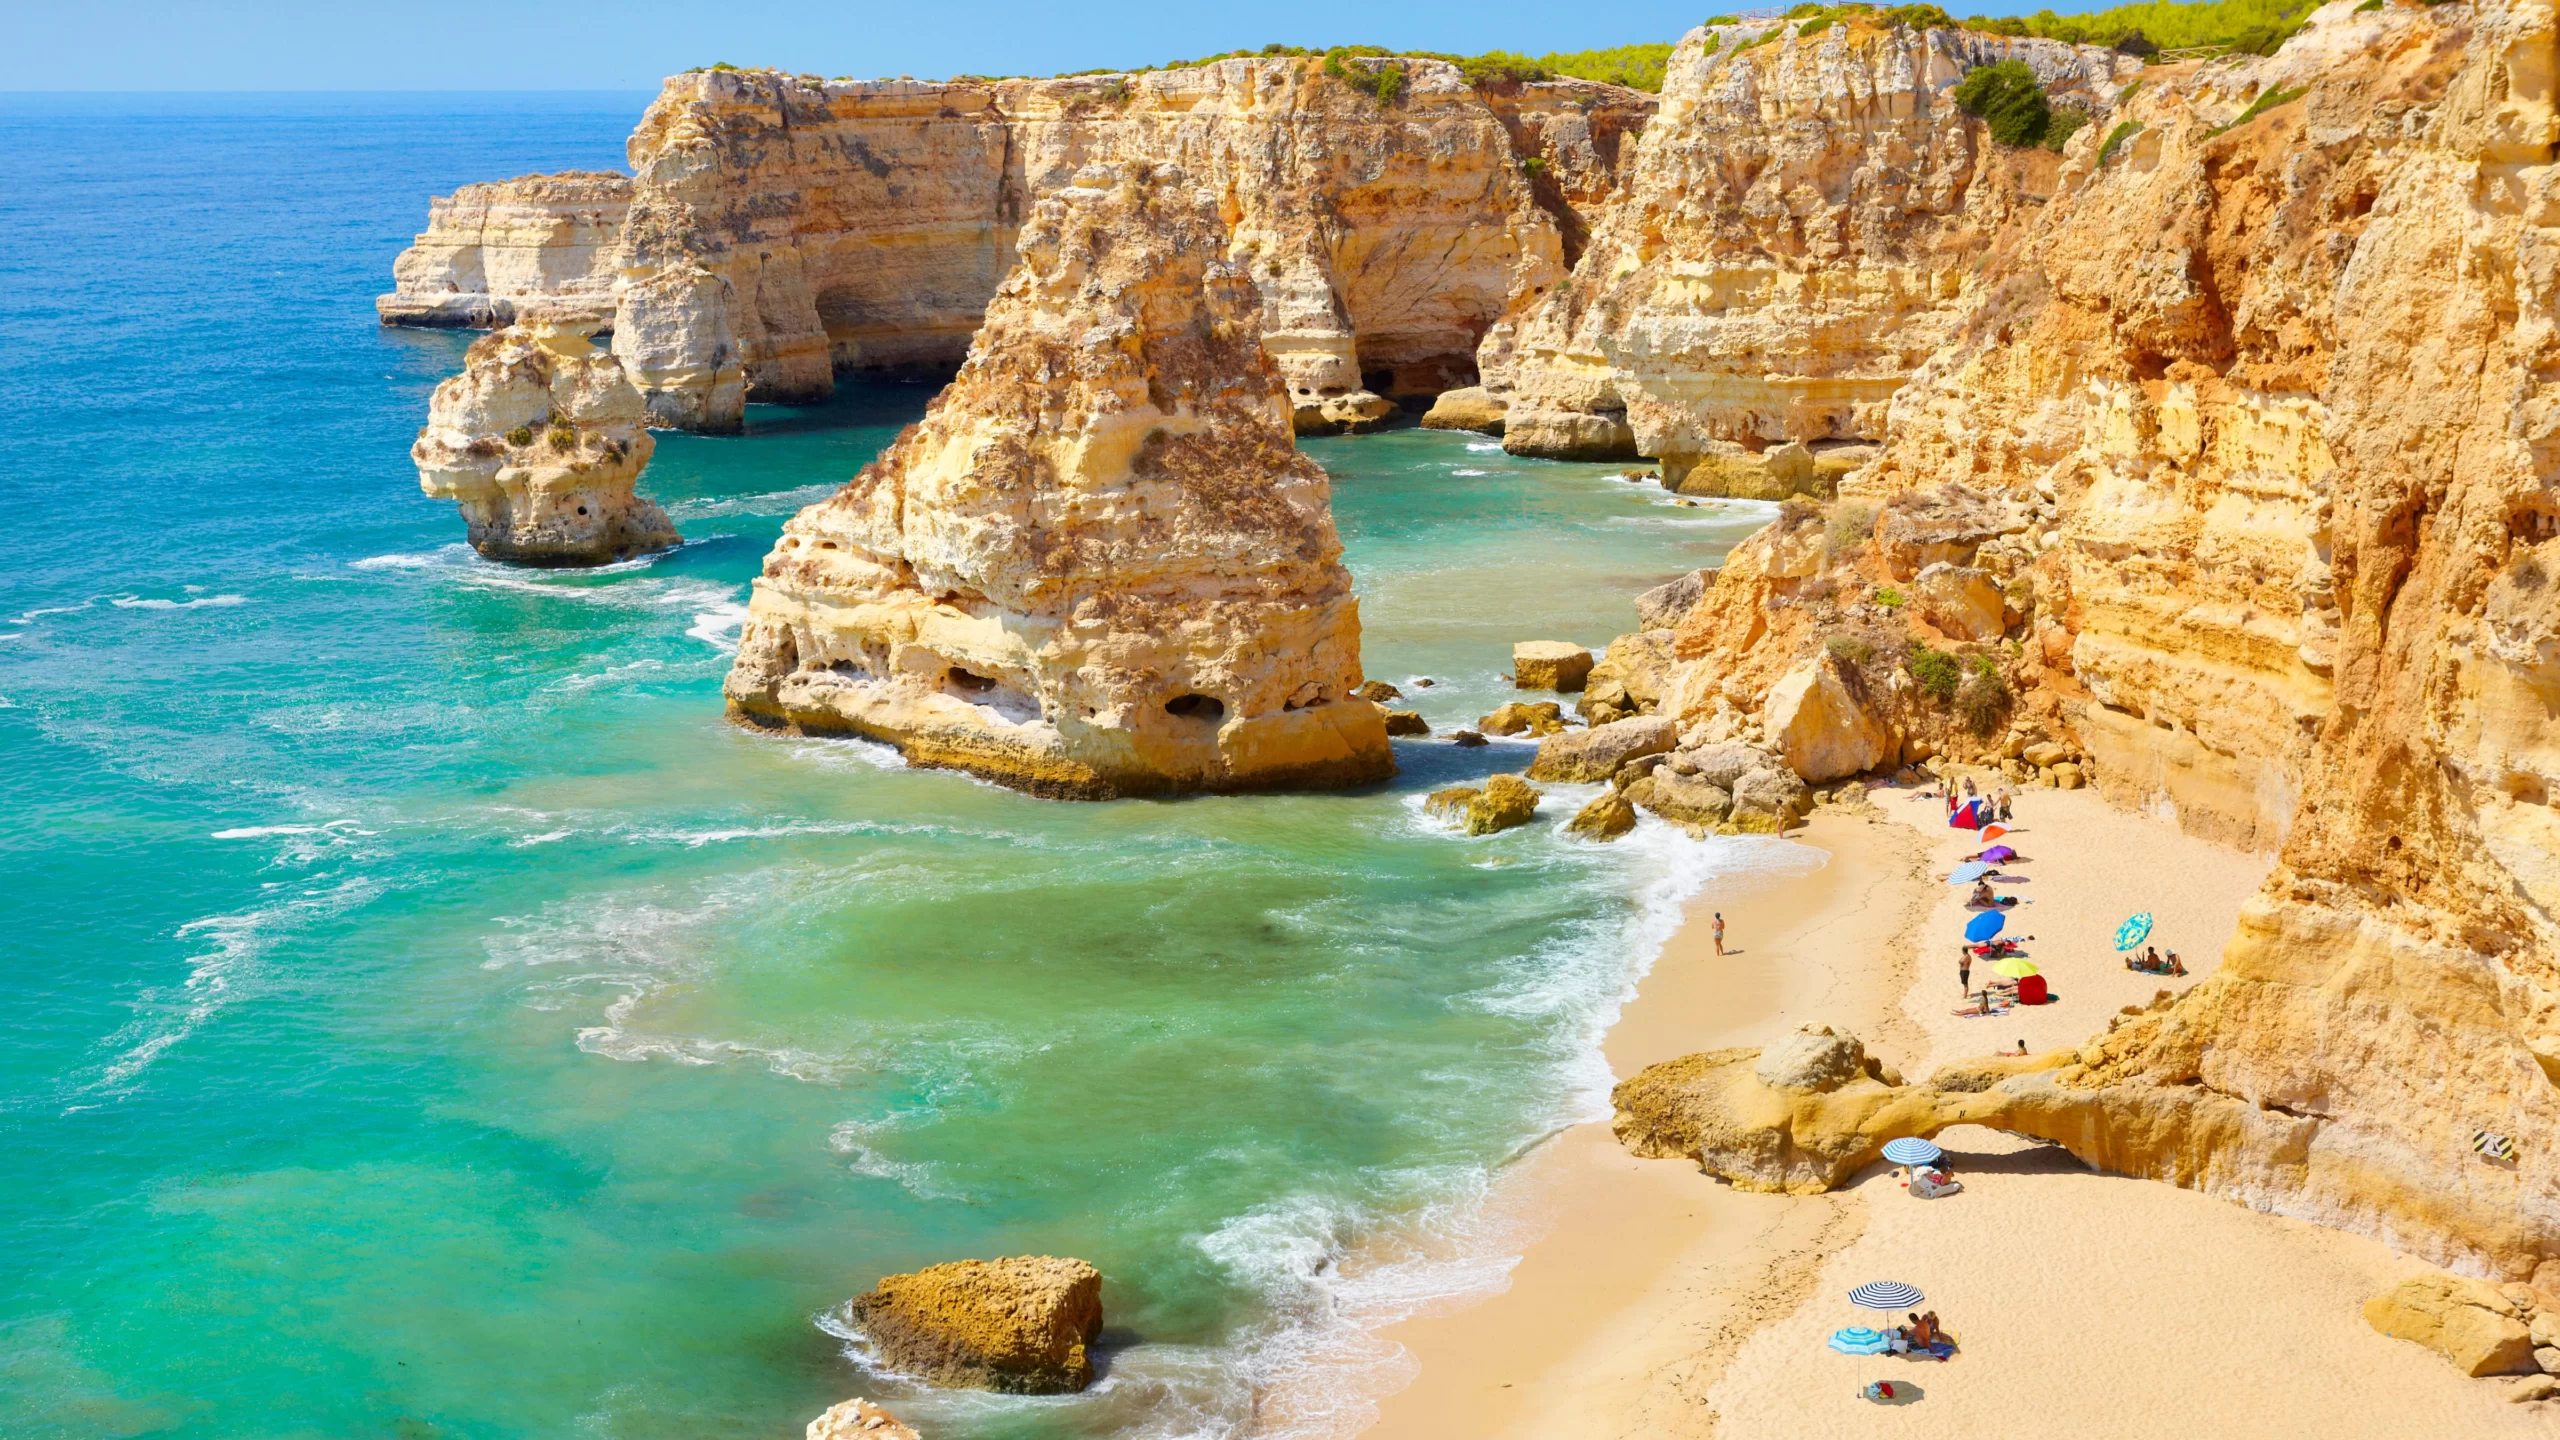 Vacanta in minunatul Algarve, Portugalia – 224 euro (zbor + cazare 7 nopti) – cunoscut pentru plaje exotice